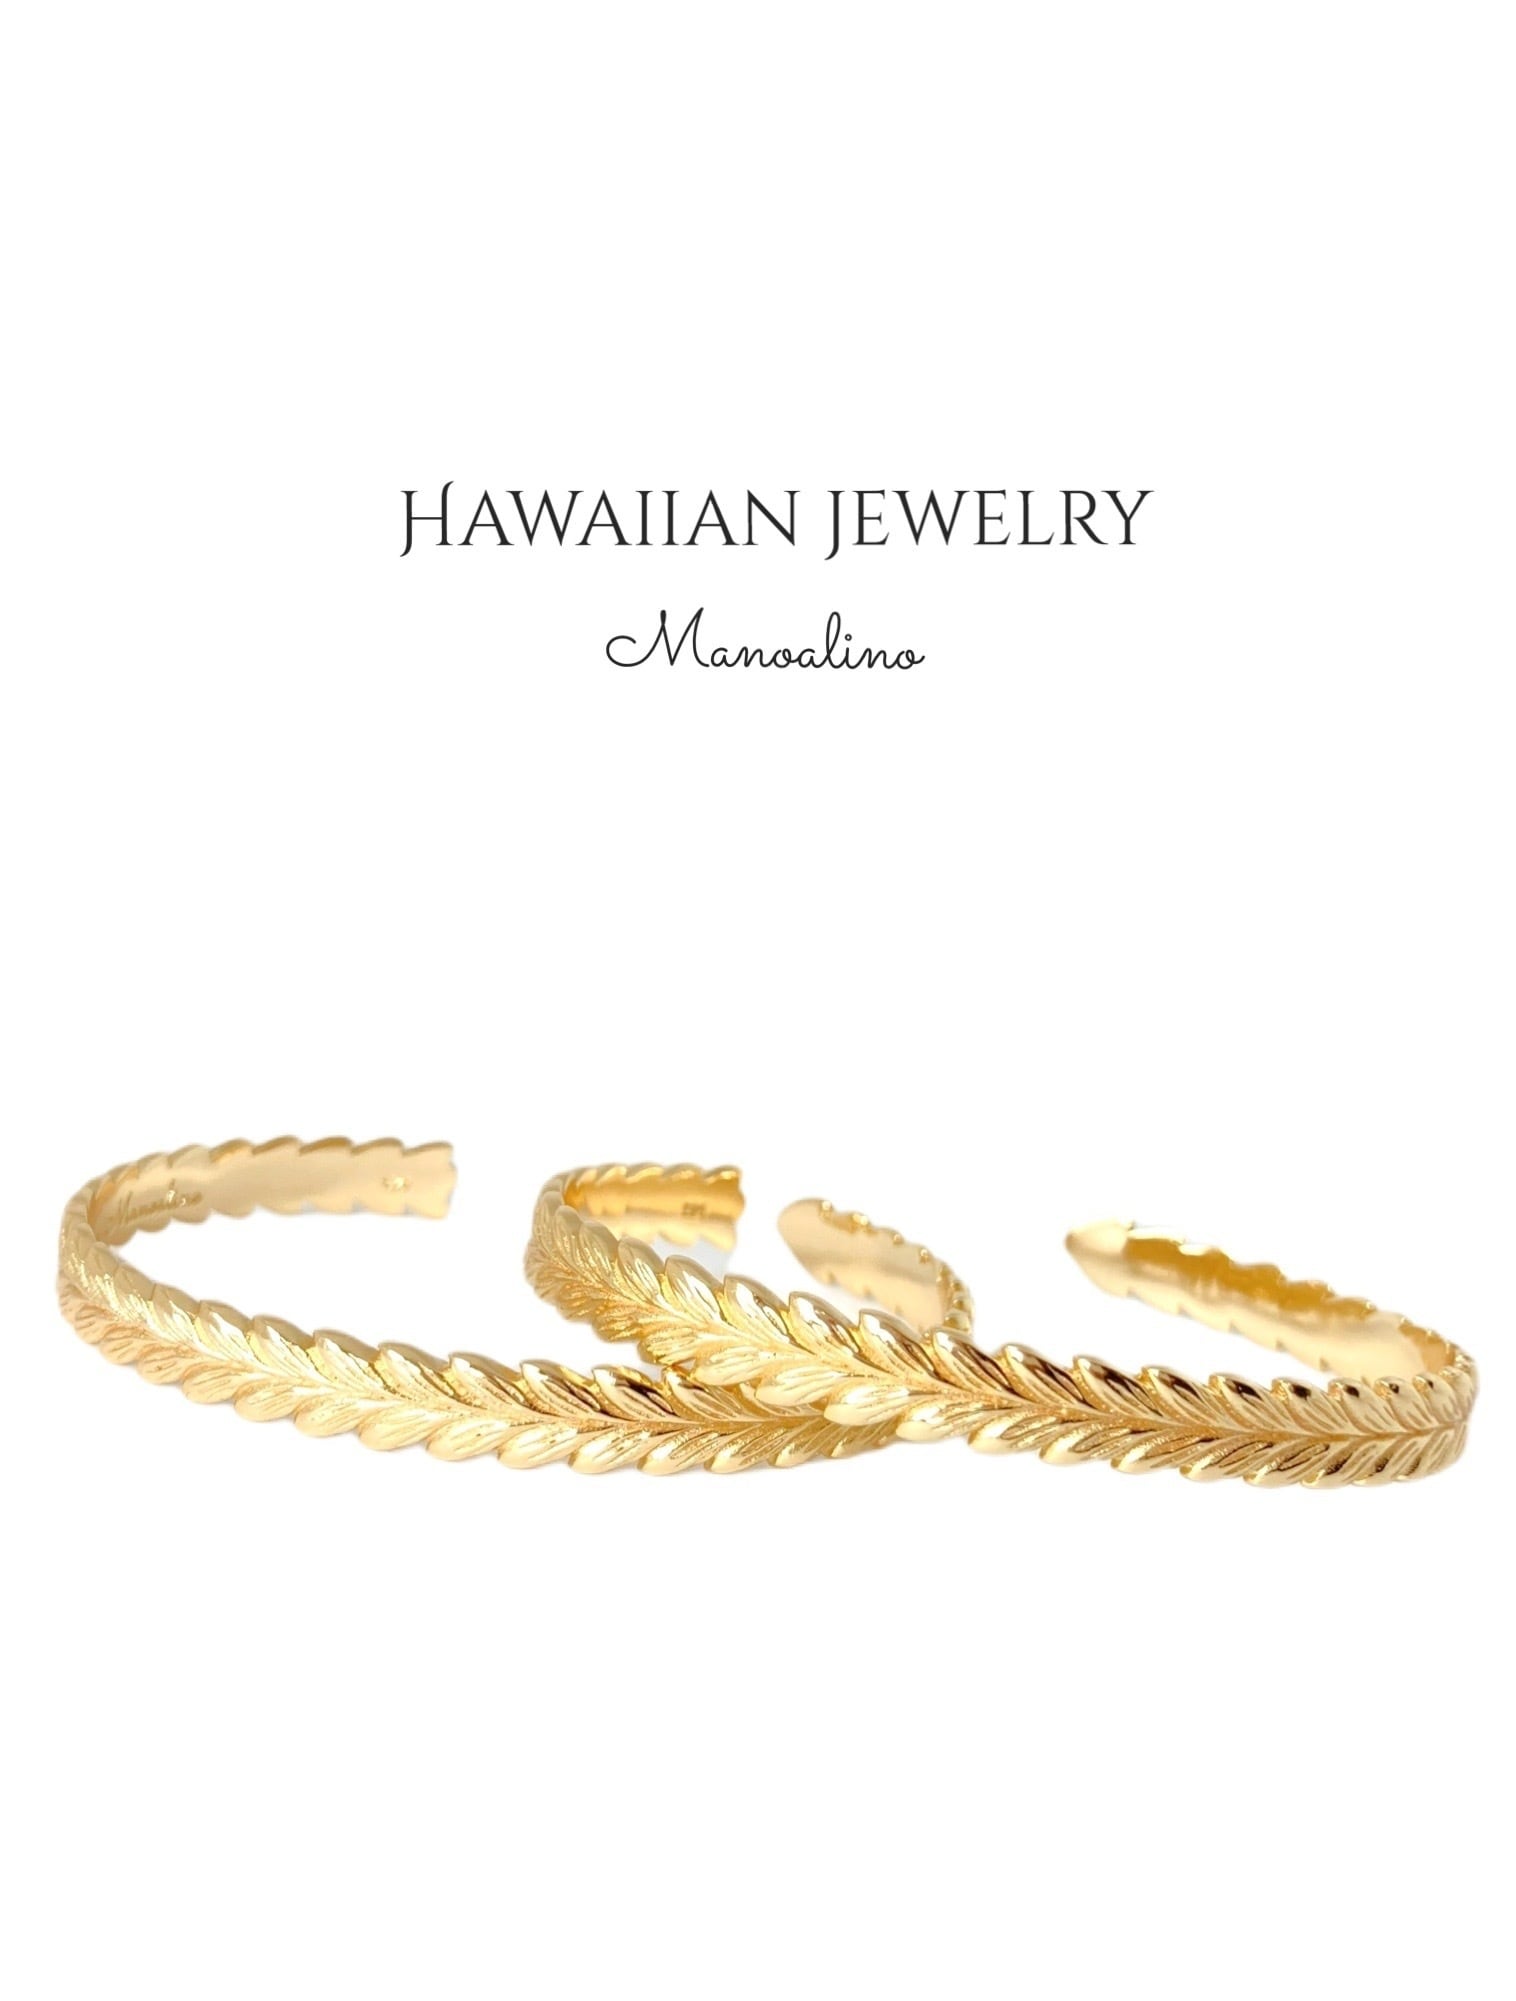 Maile 6mm bangle Hawaiianjewelry(ハワイアンジュエリー マイレ6mmバングル) Manoalino  【Hawaiianjewelry・Hawaiianaccessoryselect】